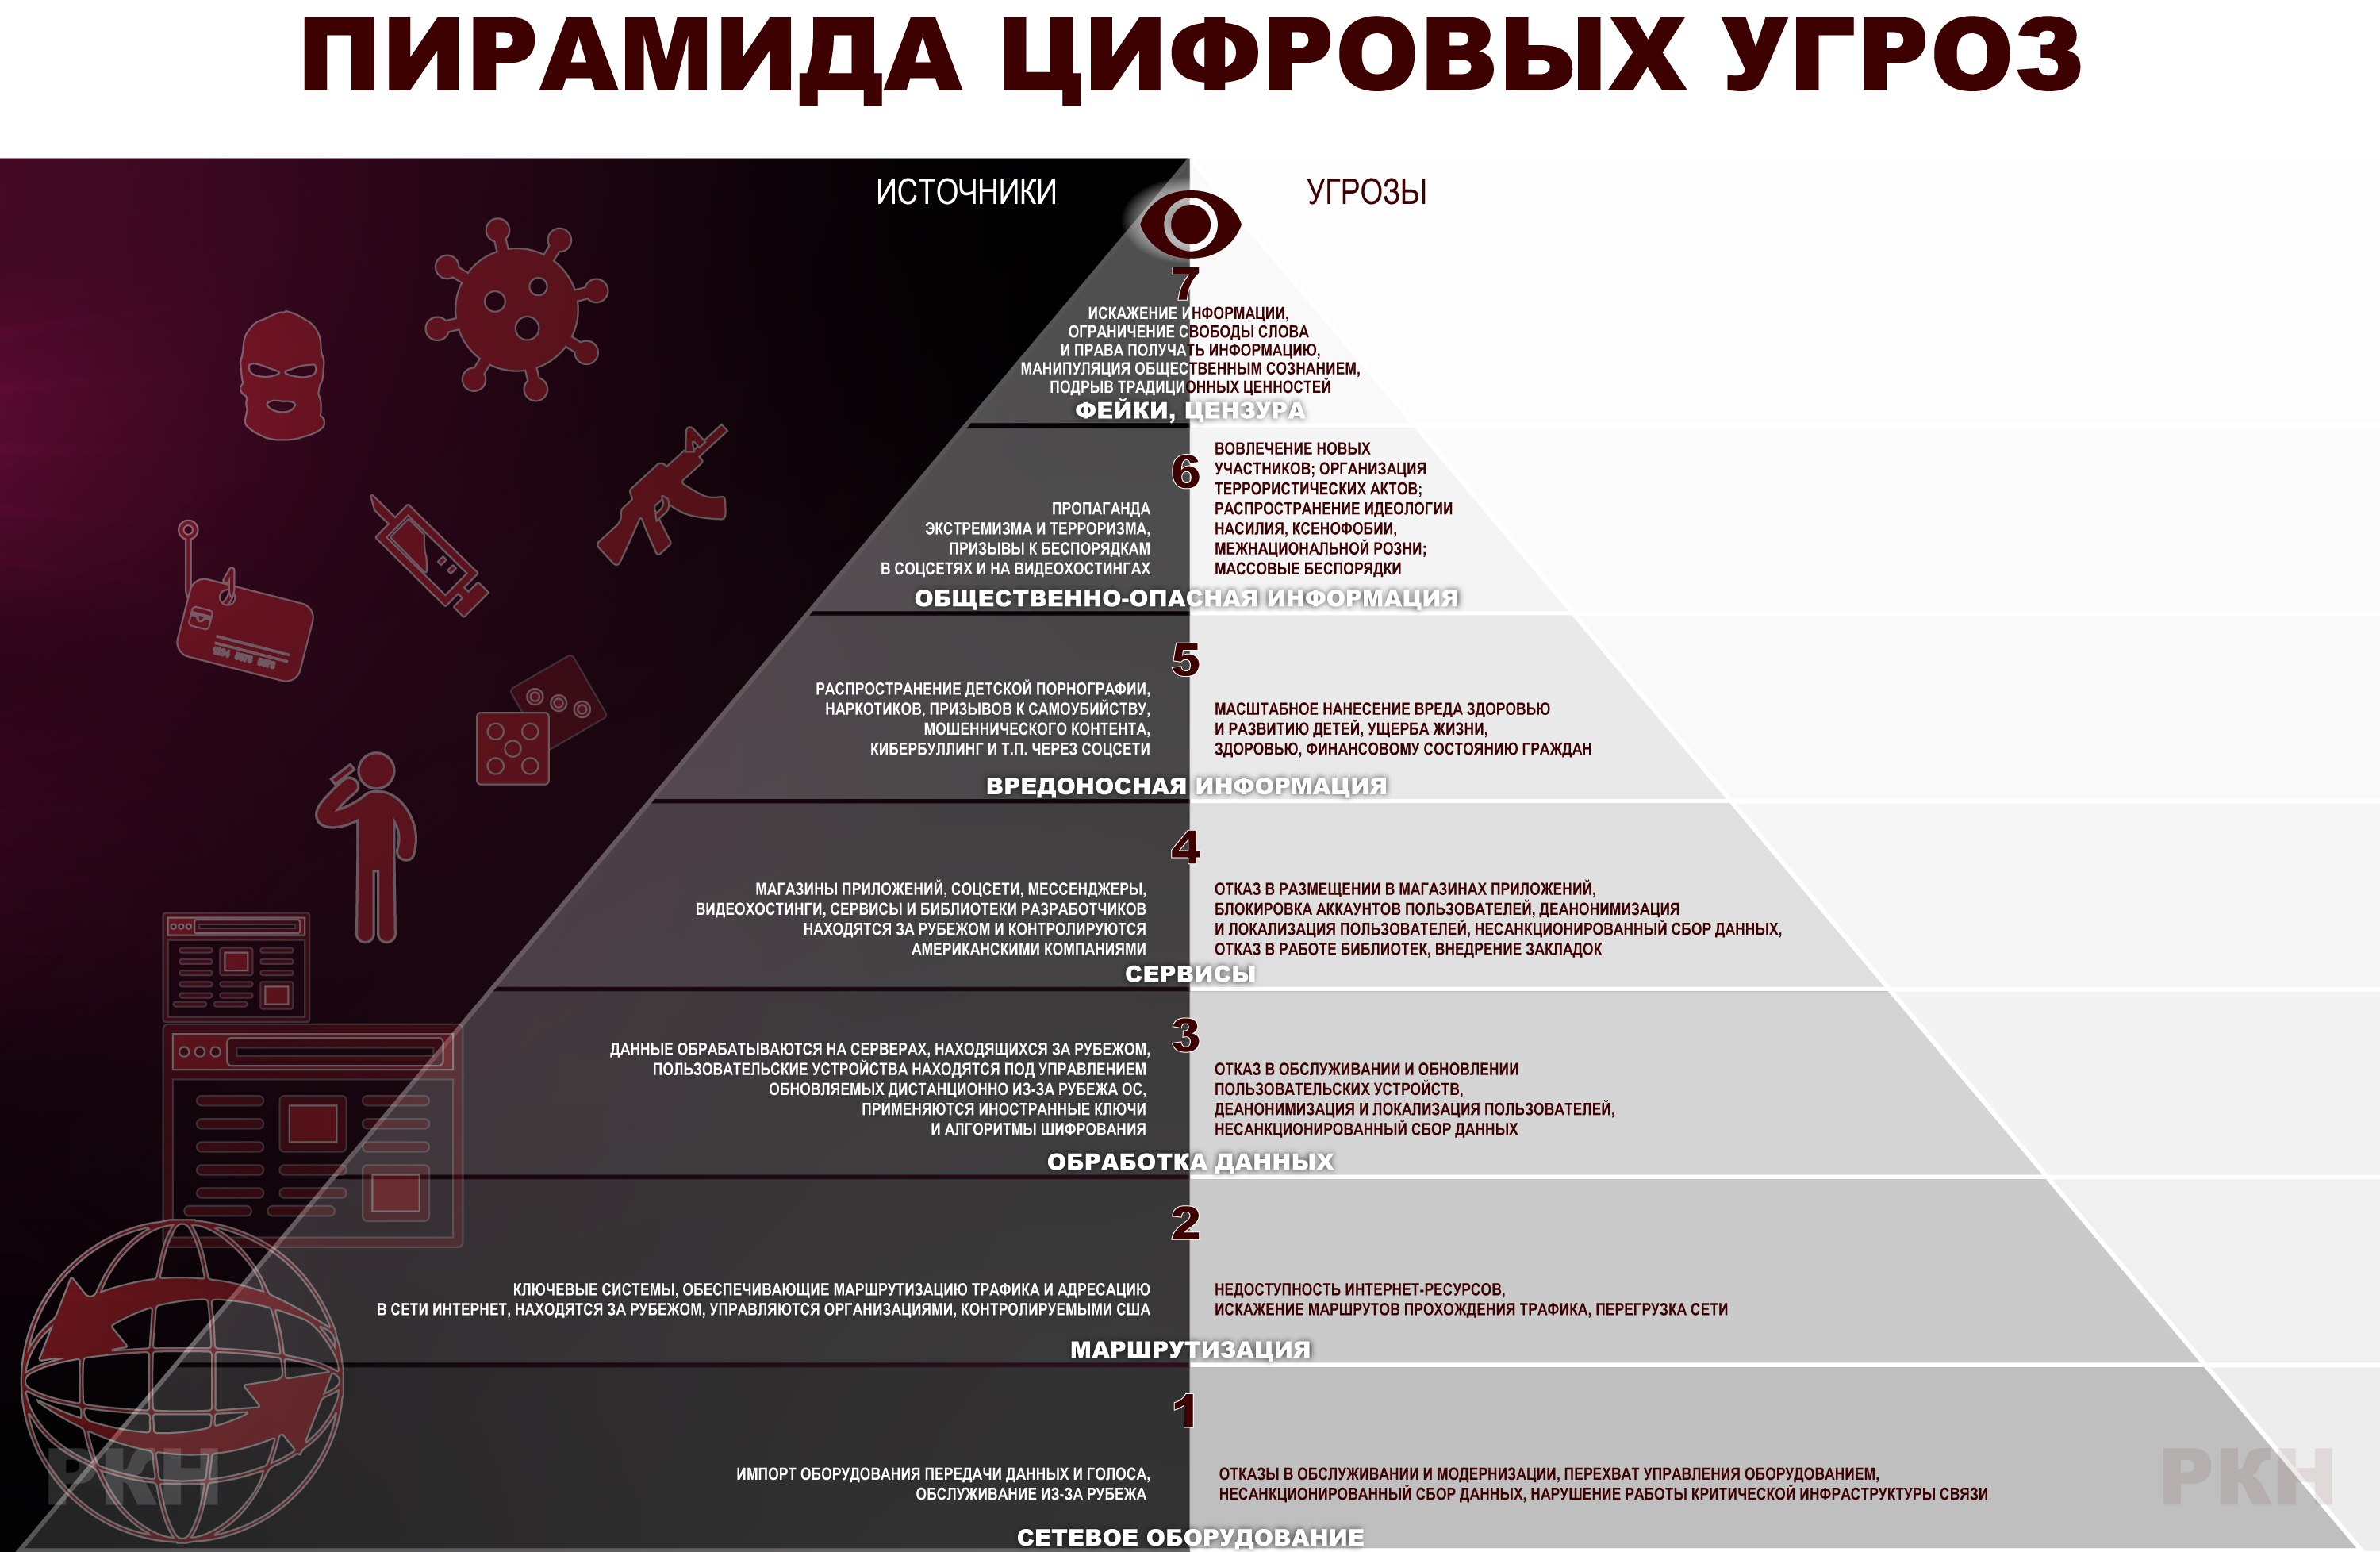 Классификация угроз информационной безопасности по версии Роскомнадзора